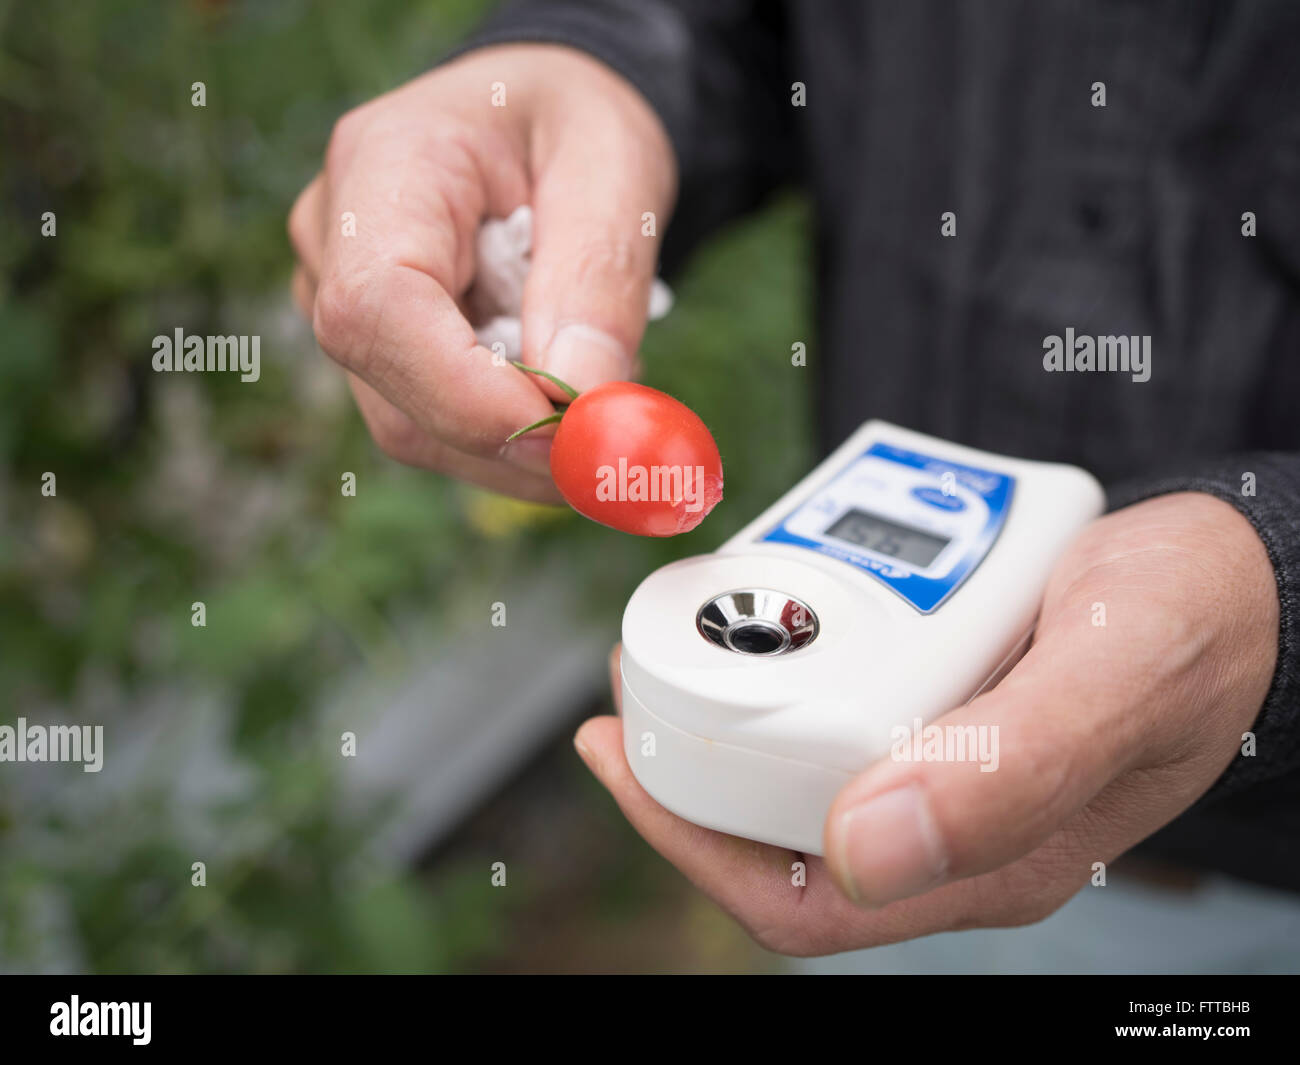 Numérique Atago, Brix, Pocket, Réfractomètres à main pour mesurer la douceur des tomates Banque D'Images